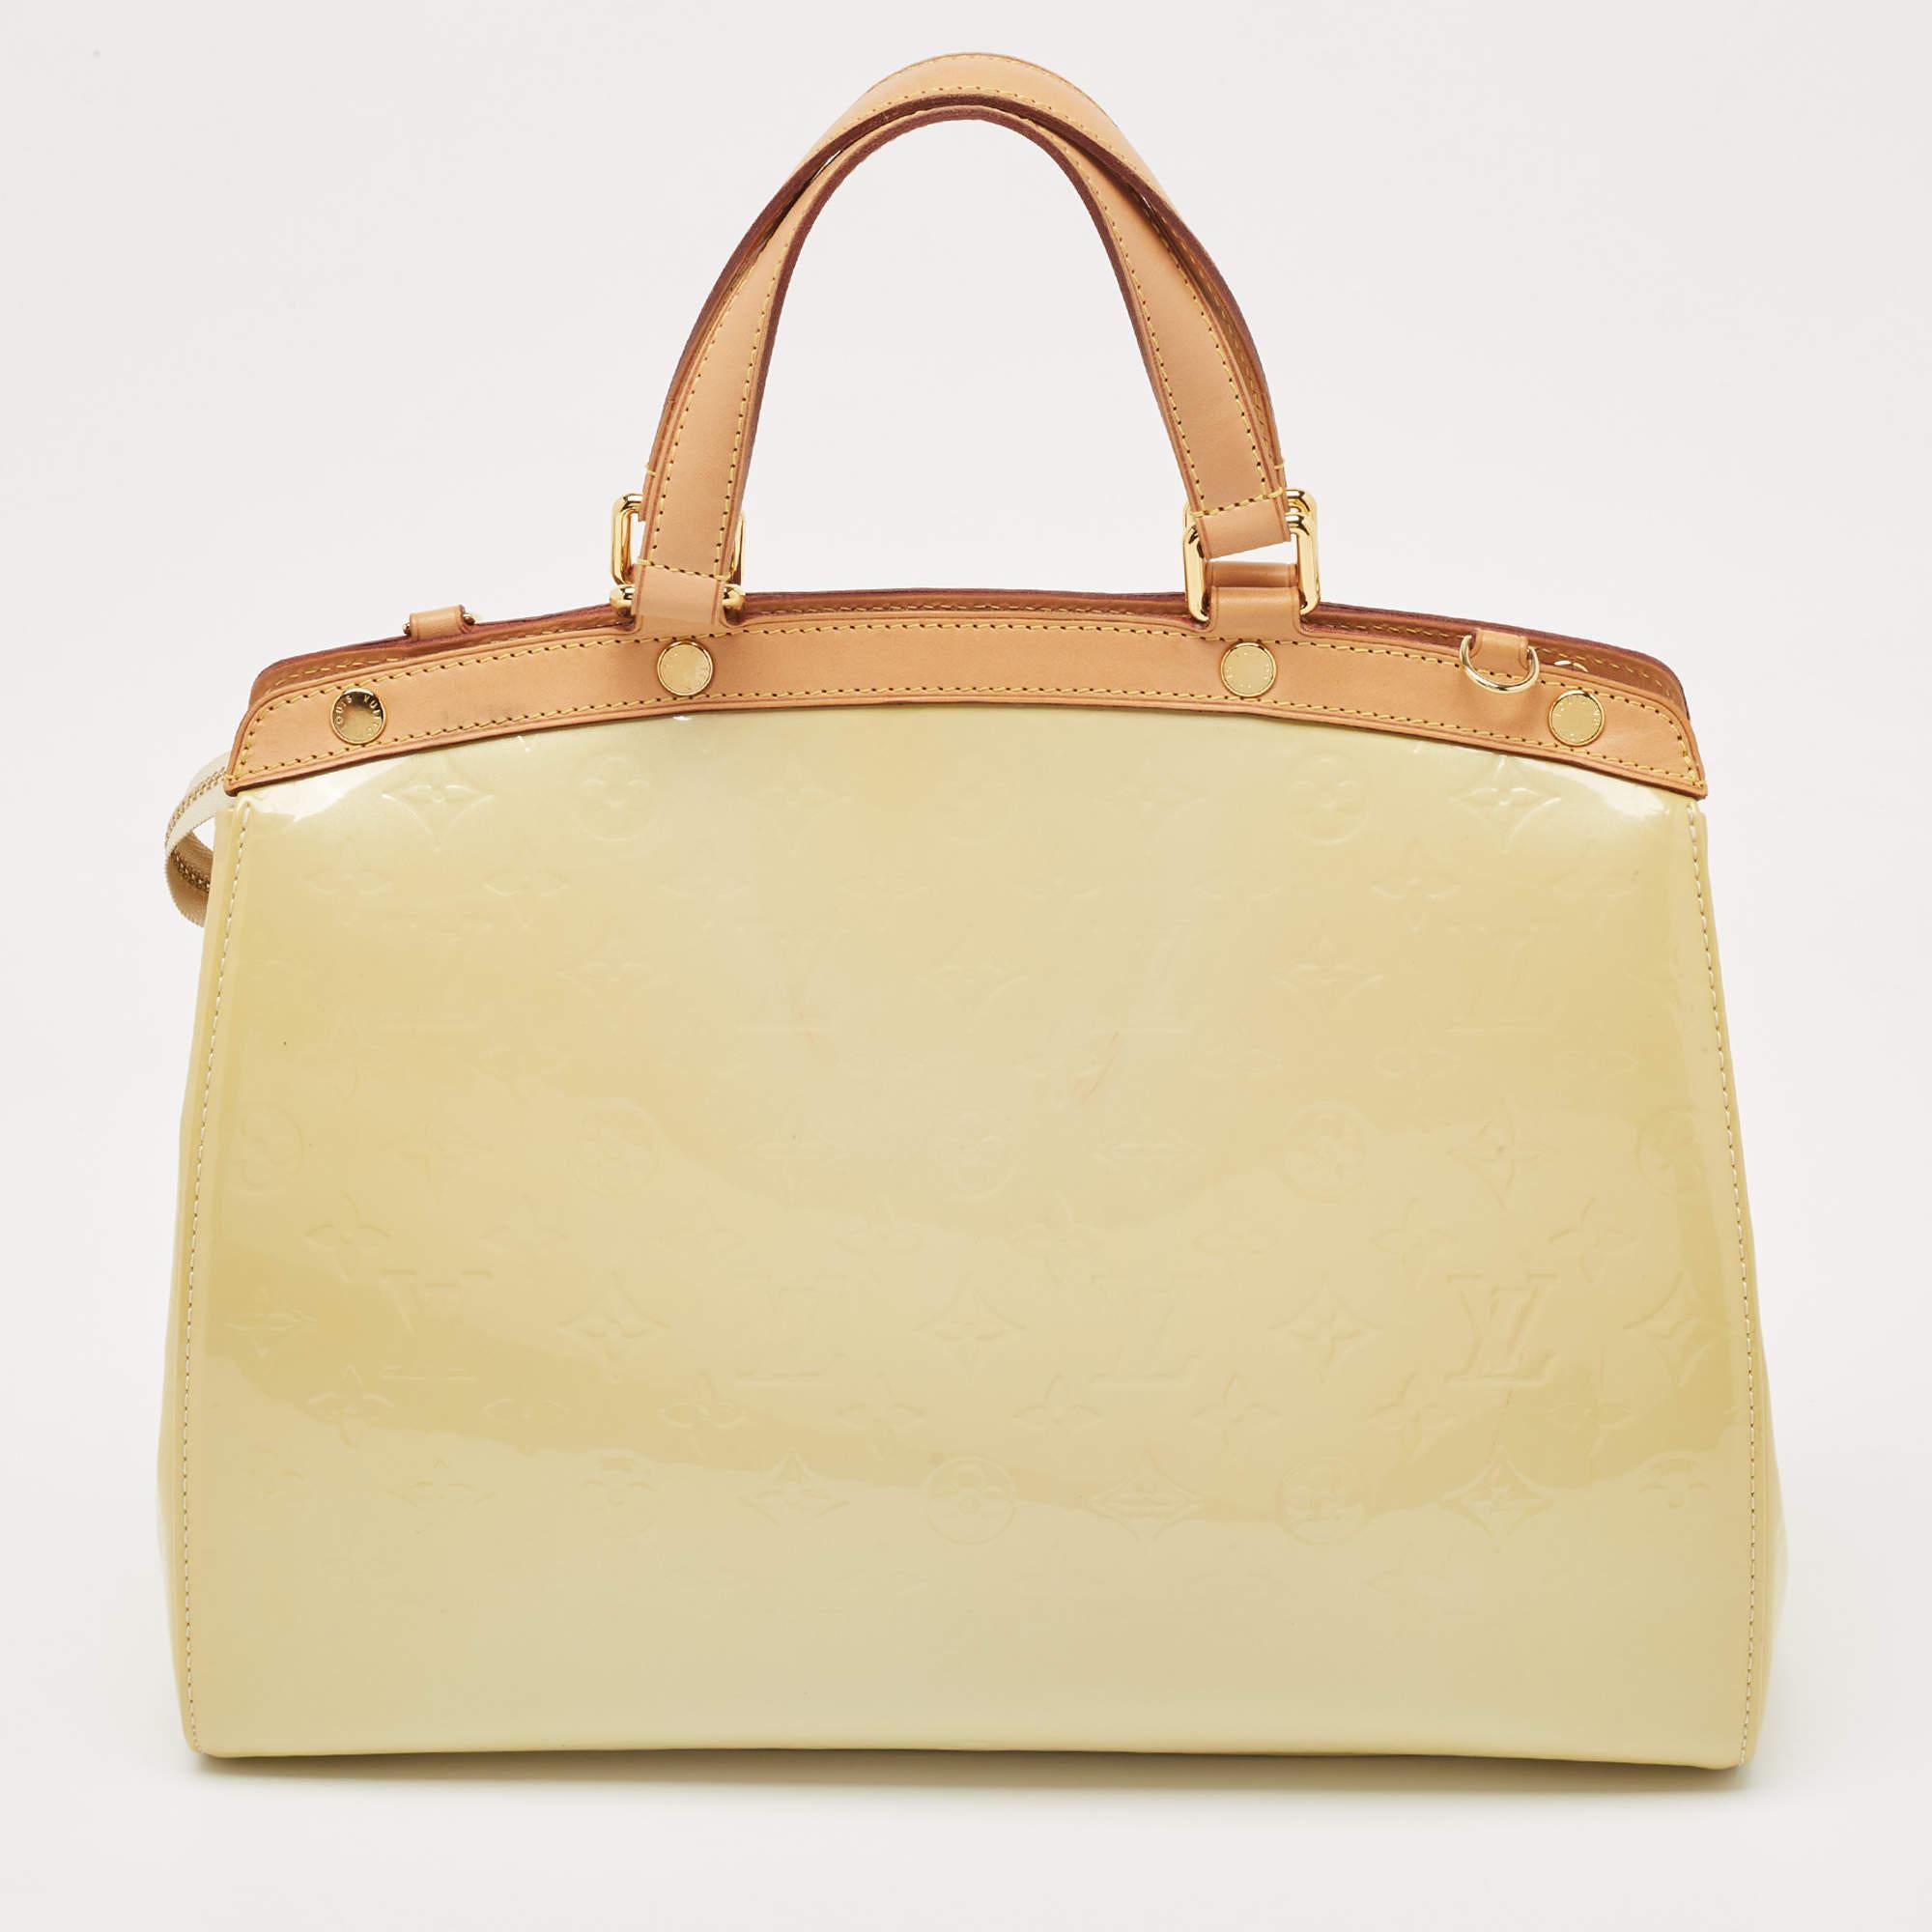 Diese Brea GM Tasche aus dem Hause Louis Vuitton besticht durch ihre präzise Form, ihren Stil und ihr Design. Sie ist aus Blanc Corail Monogram Vernis gefertigt und hat eine strukturierte, gepflegte Silhouette. Sie verfügt über goldfarbene